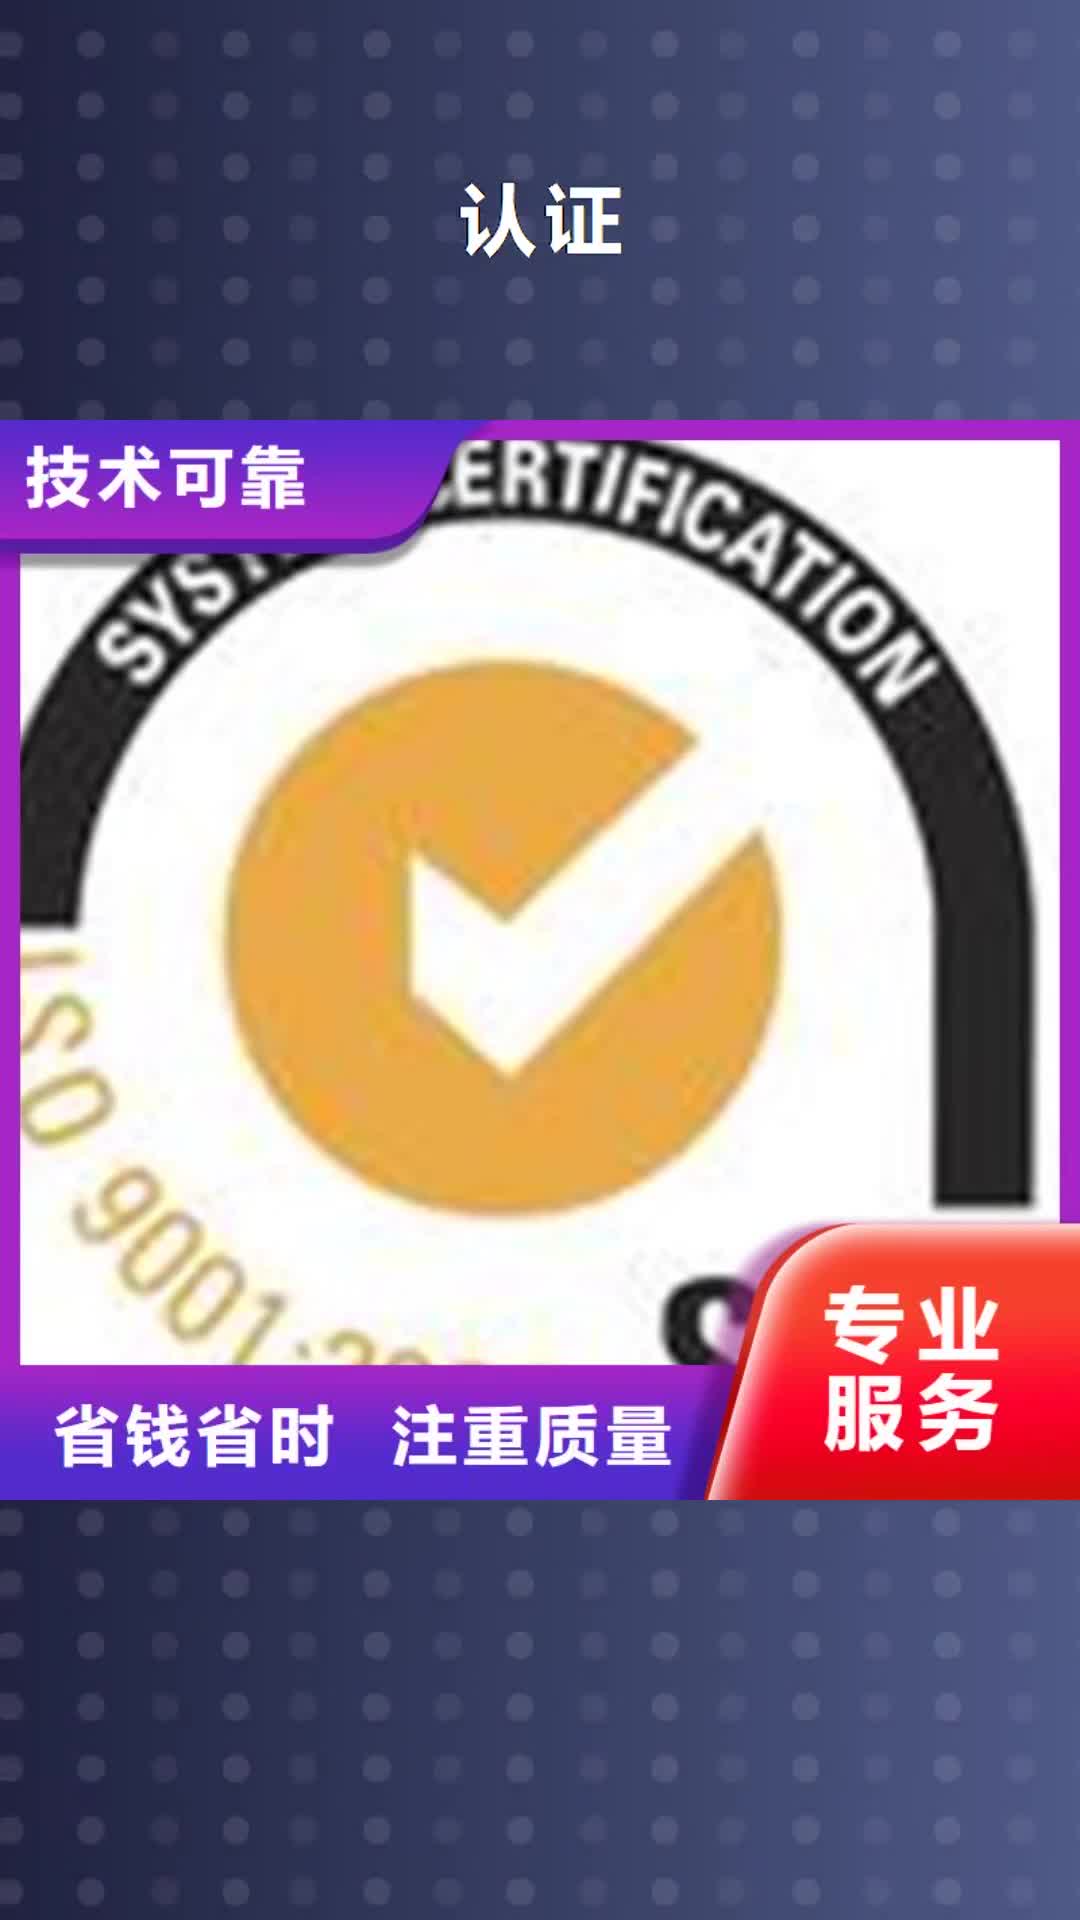 资阳 认证,【知识产权认证/GB29490】高效